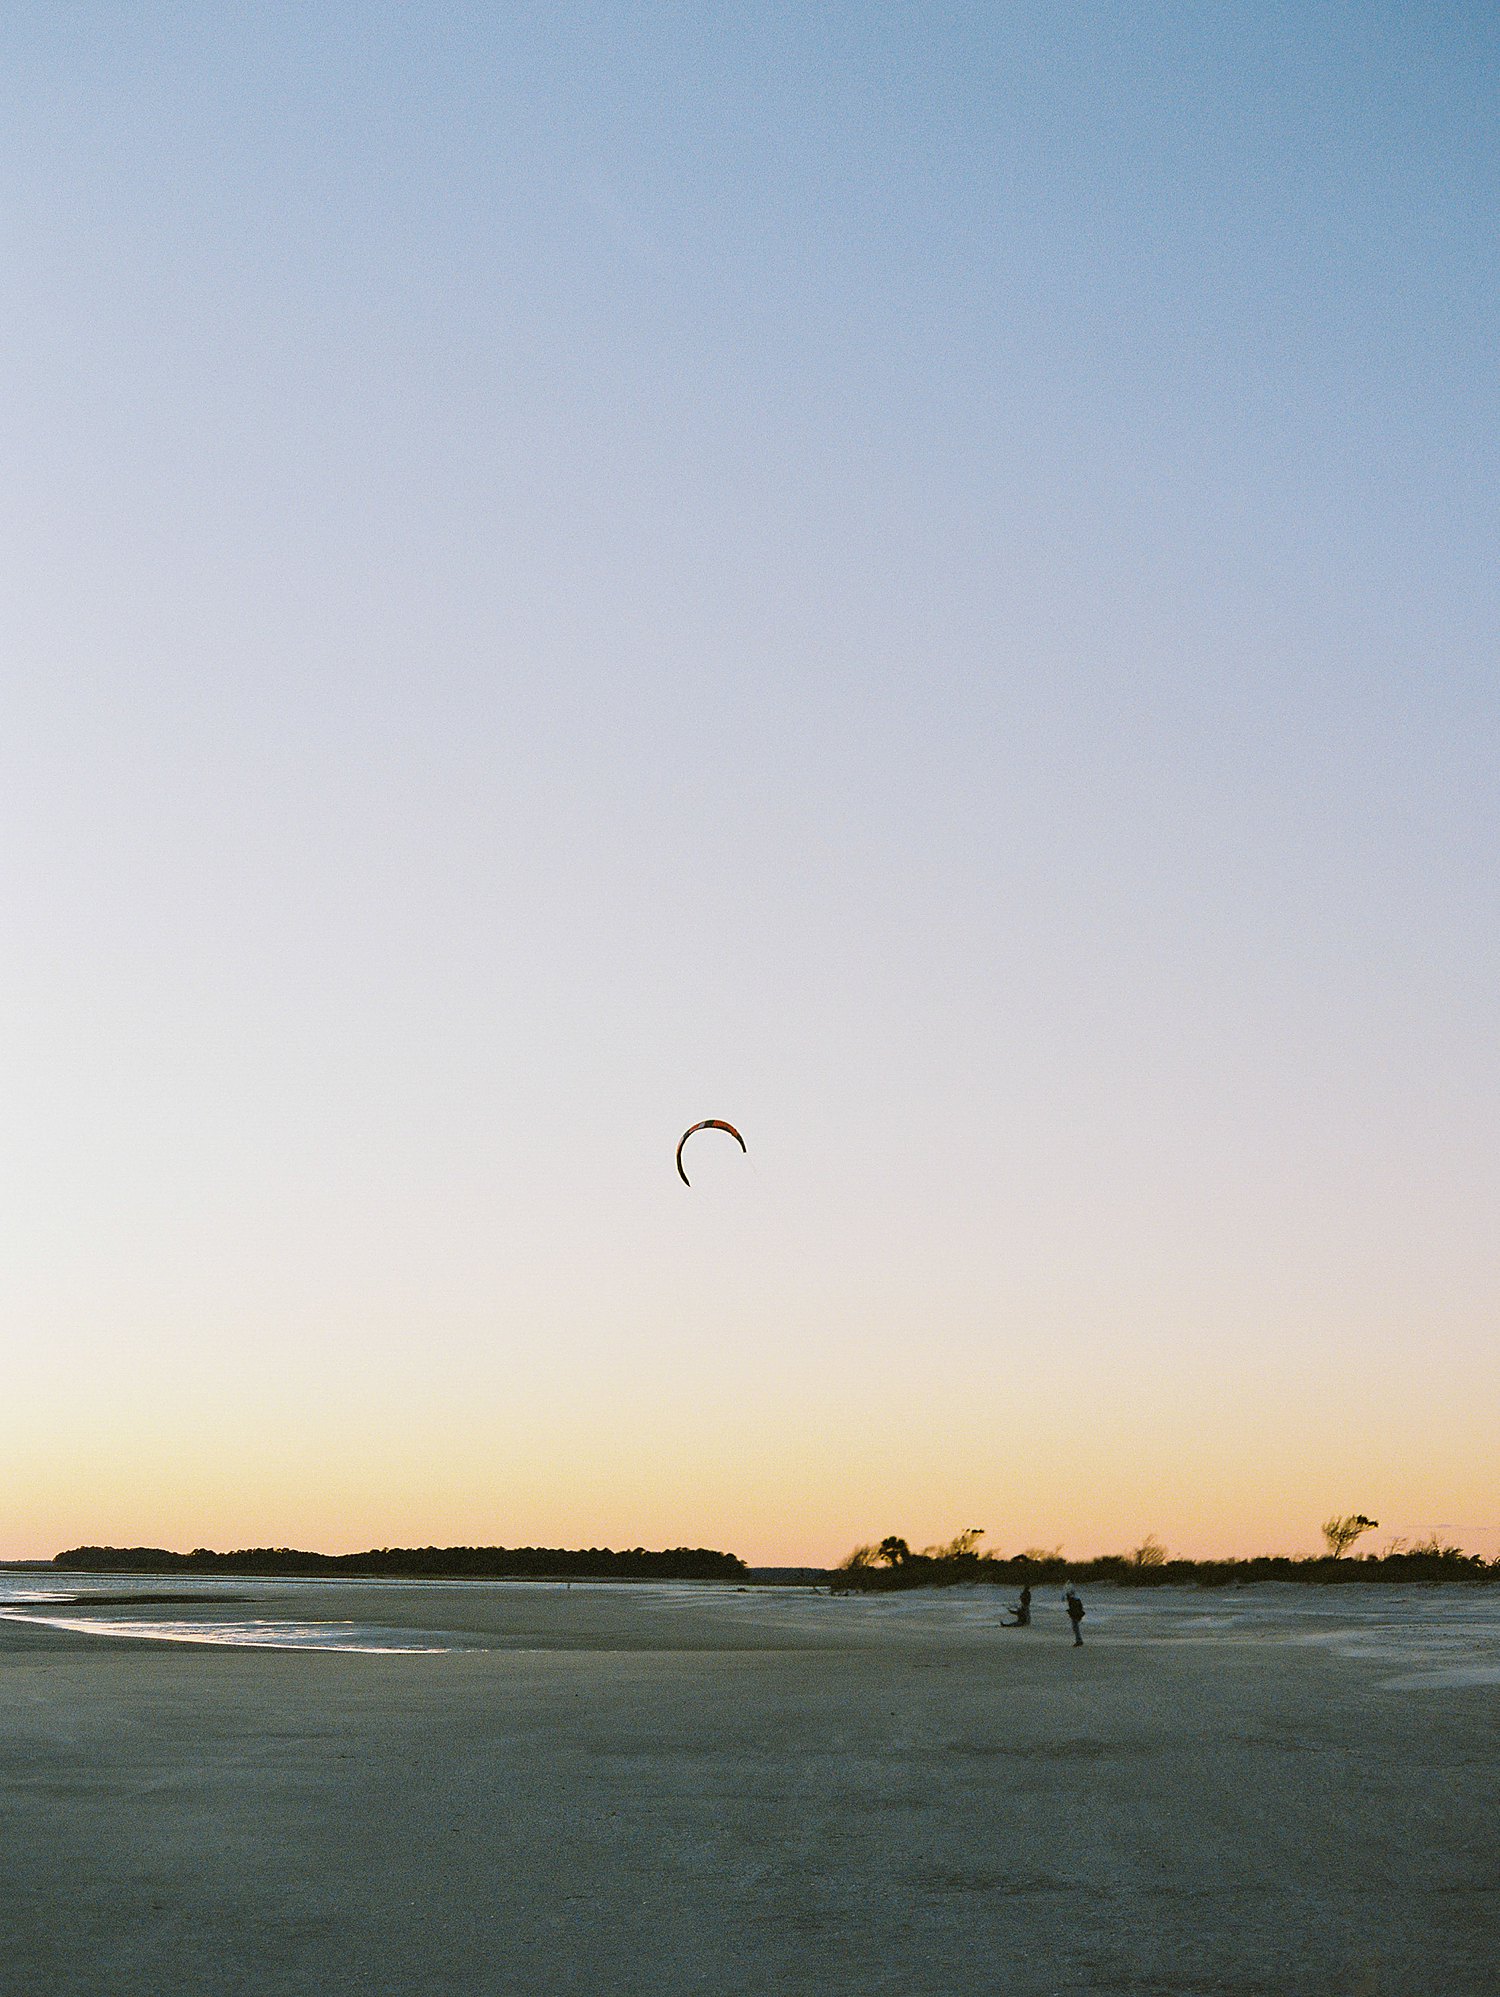 Folly Beach kite flying against blue evening sky